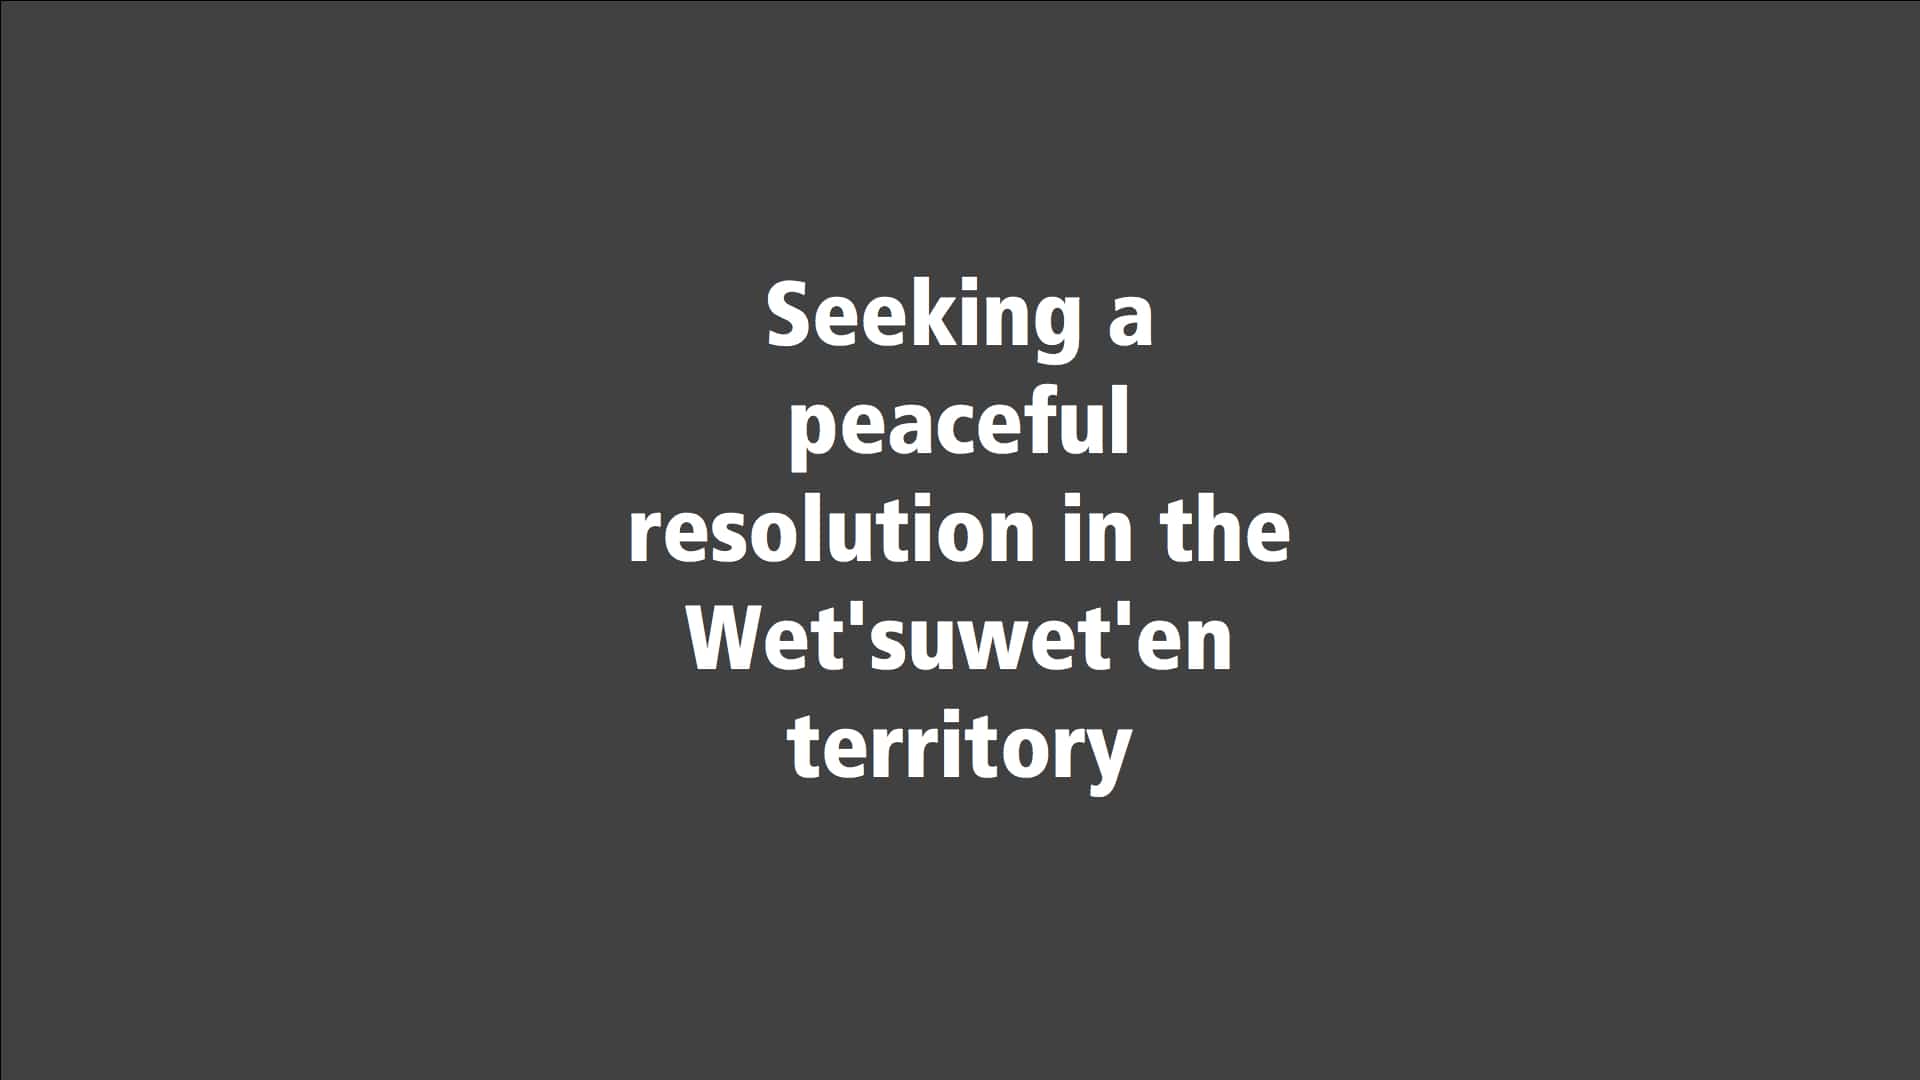 Seeking a peaceful resolution in the Wet’suwet’en territory